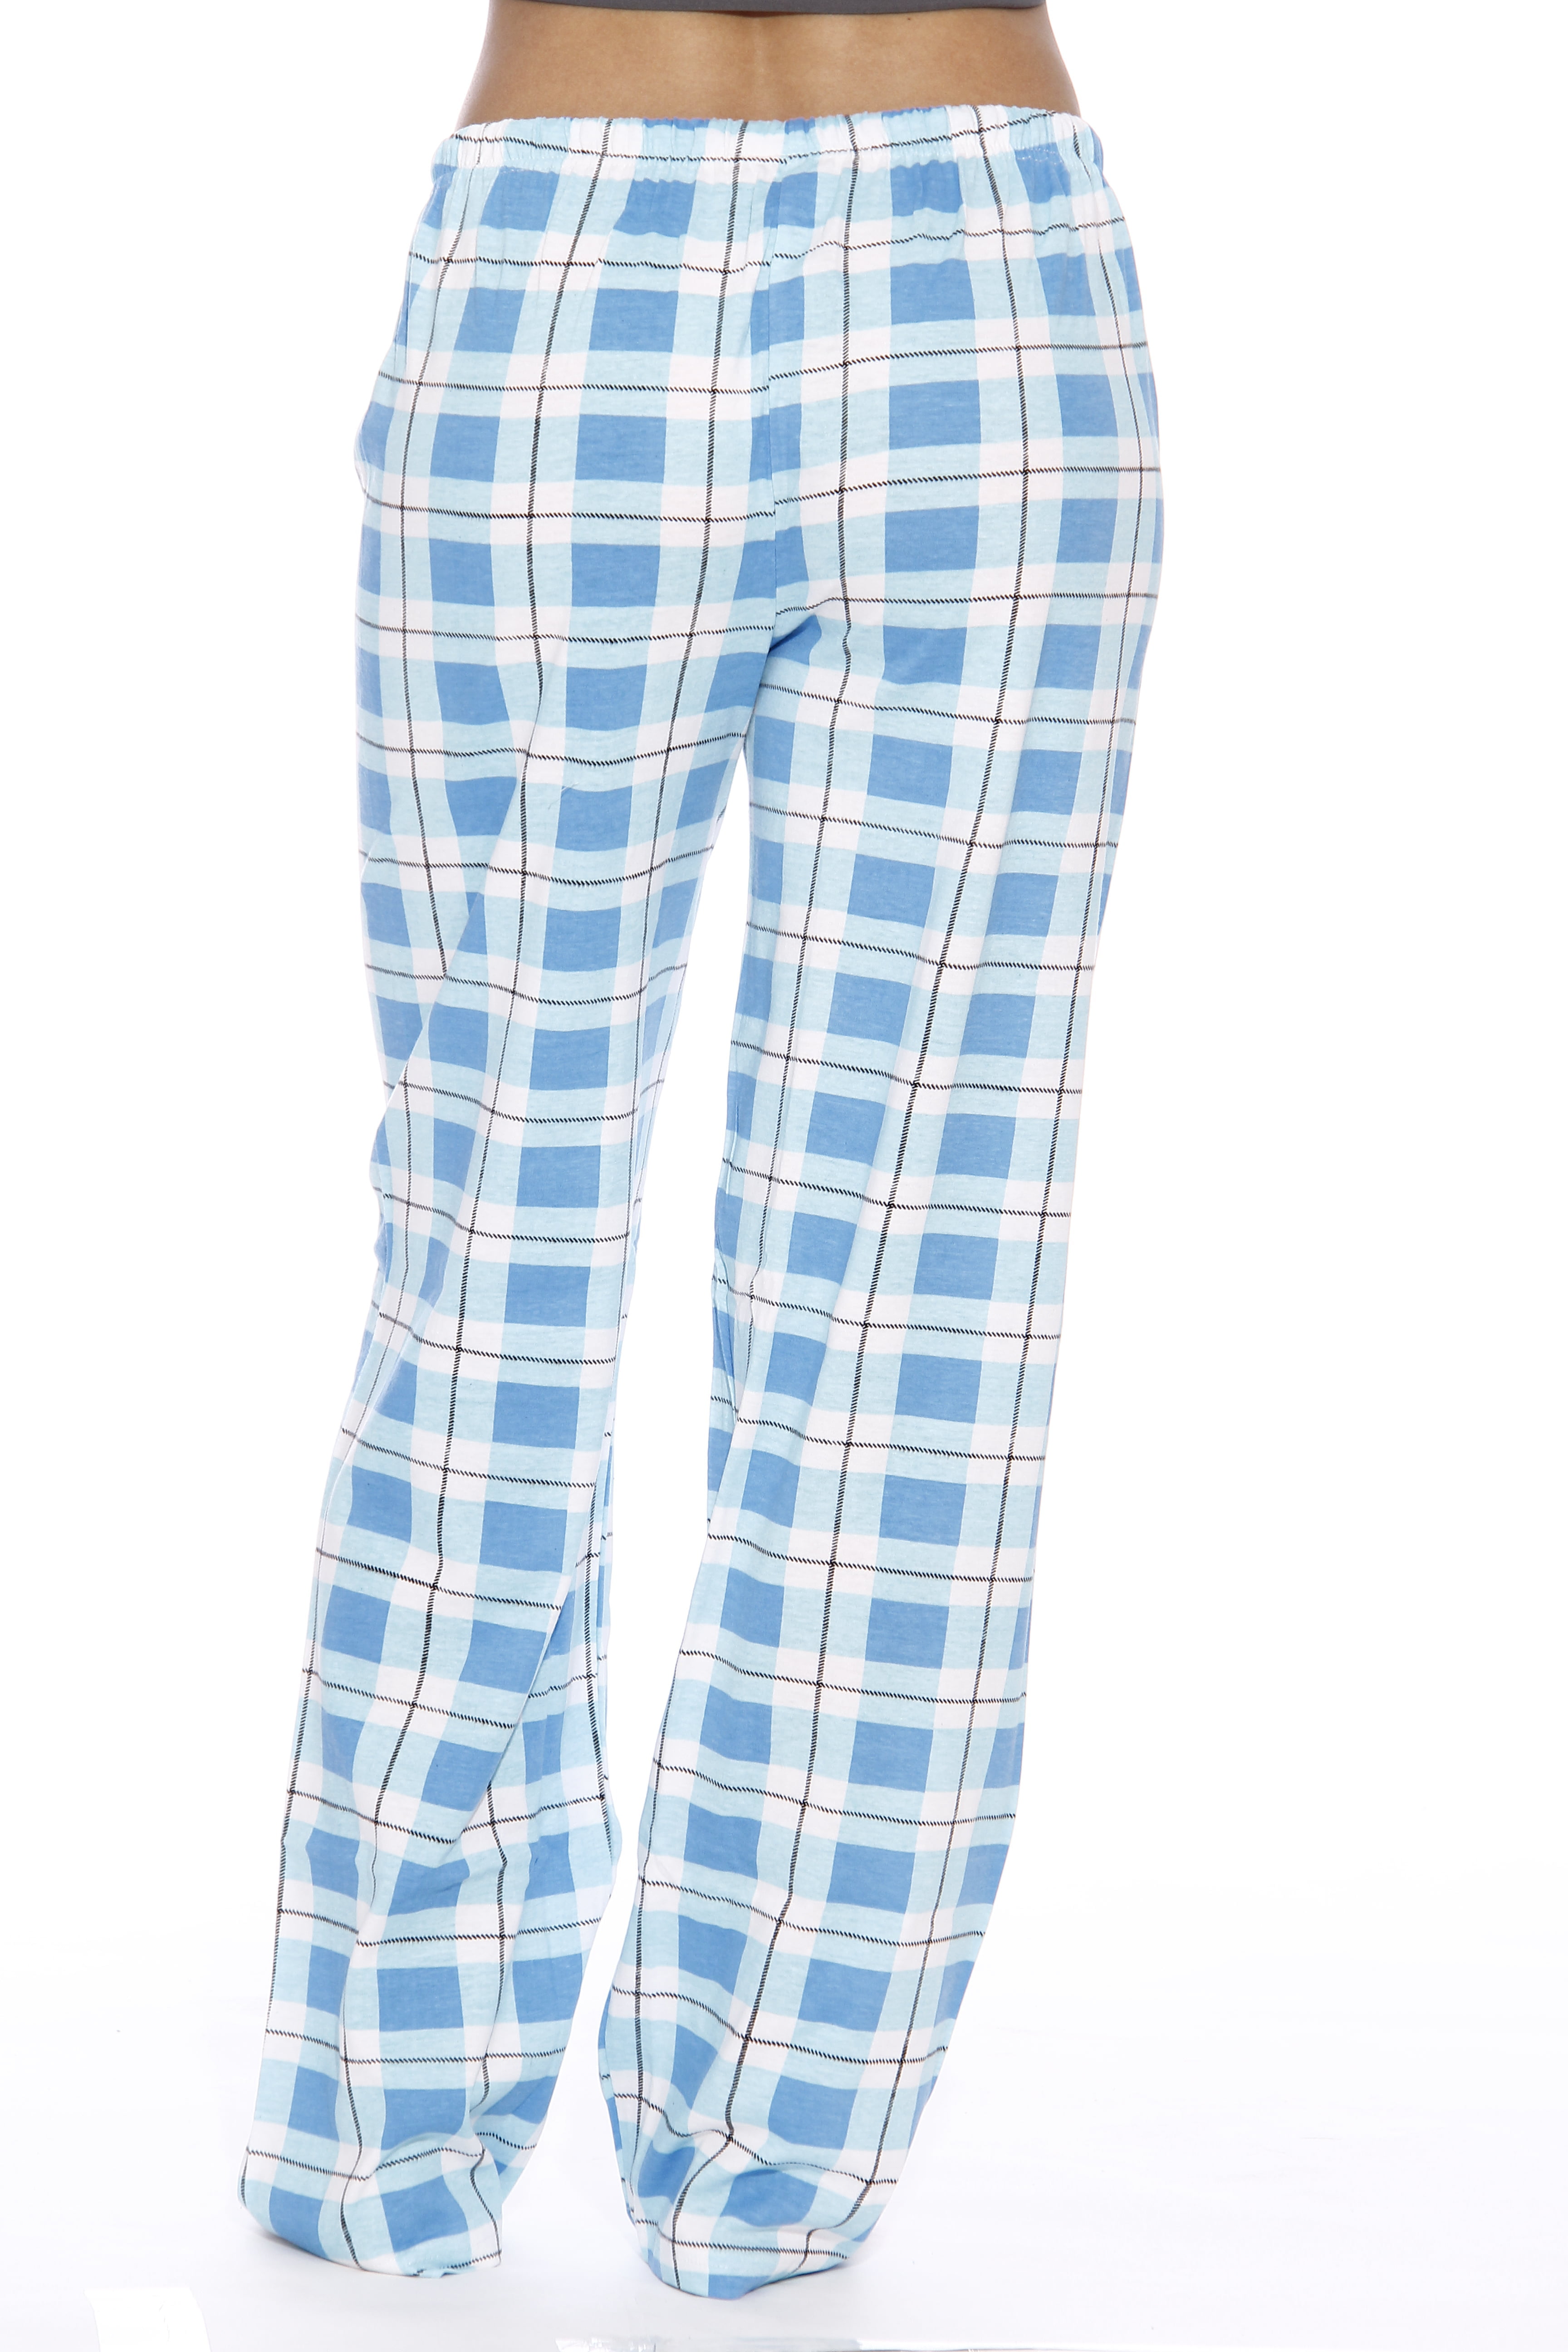 YINC Womens 100% Cotton Super Soft Flannel Plaid Pajama/Louge Pants 